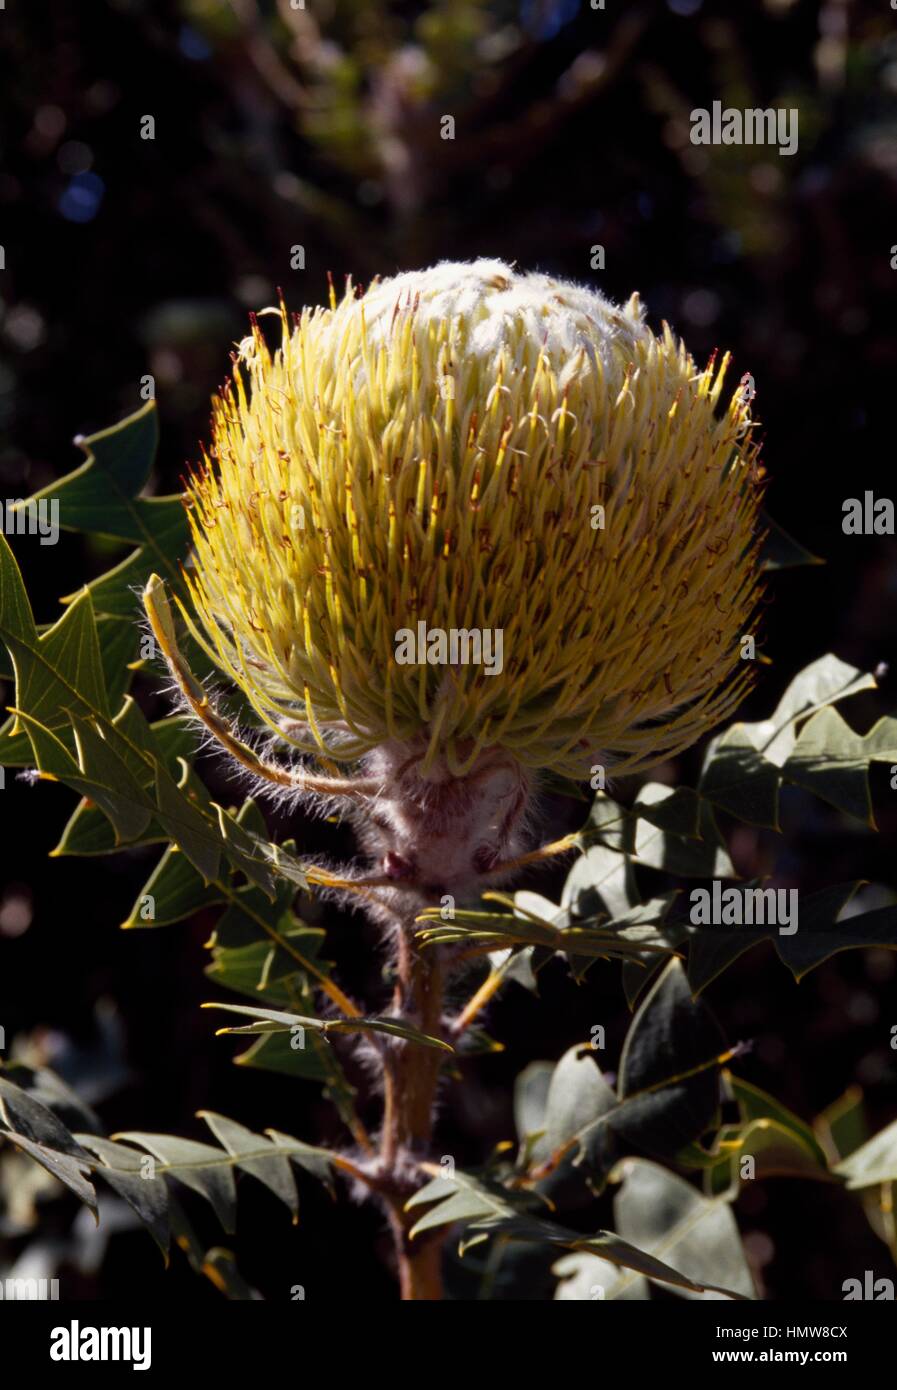 Baxter's Banksia or Bird's Nest Banksia (Banksia baxteri), Proteaceae, Australia. Stock Photo